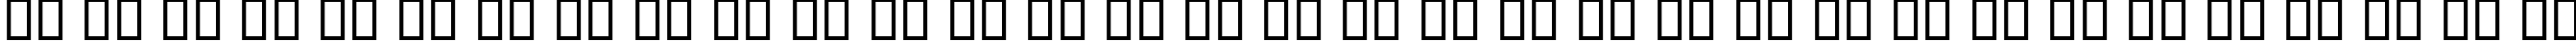 Пример написания русского алфавита шрифтом B Narenj